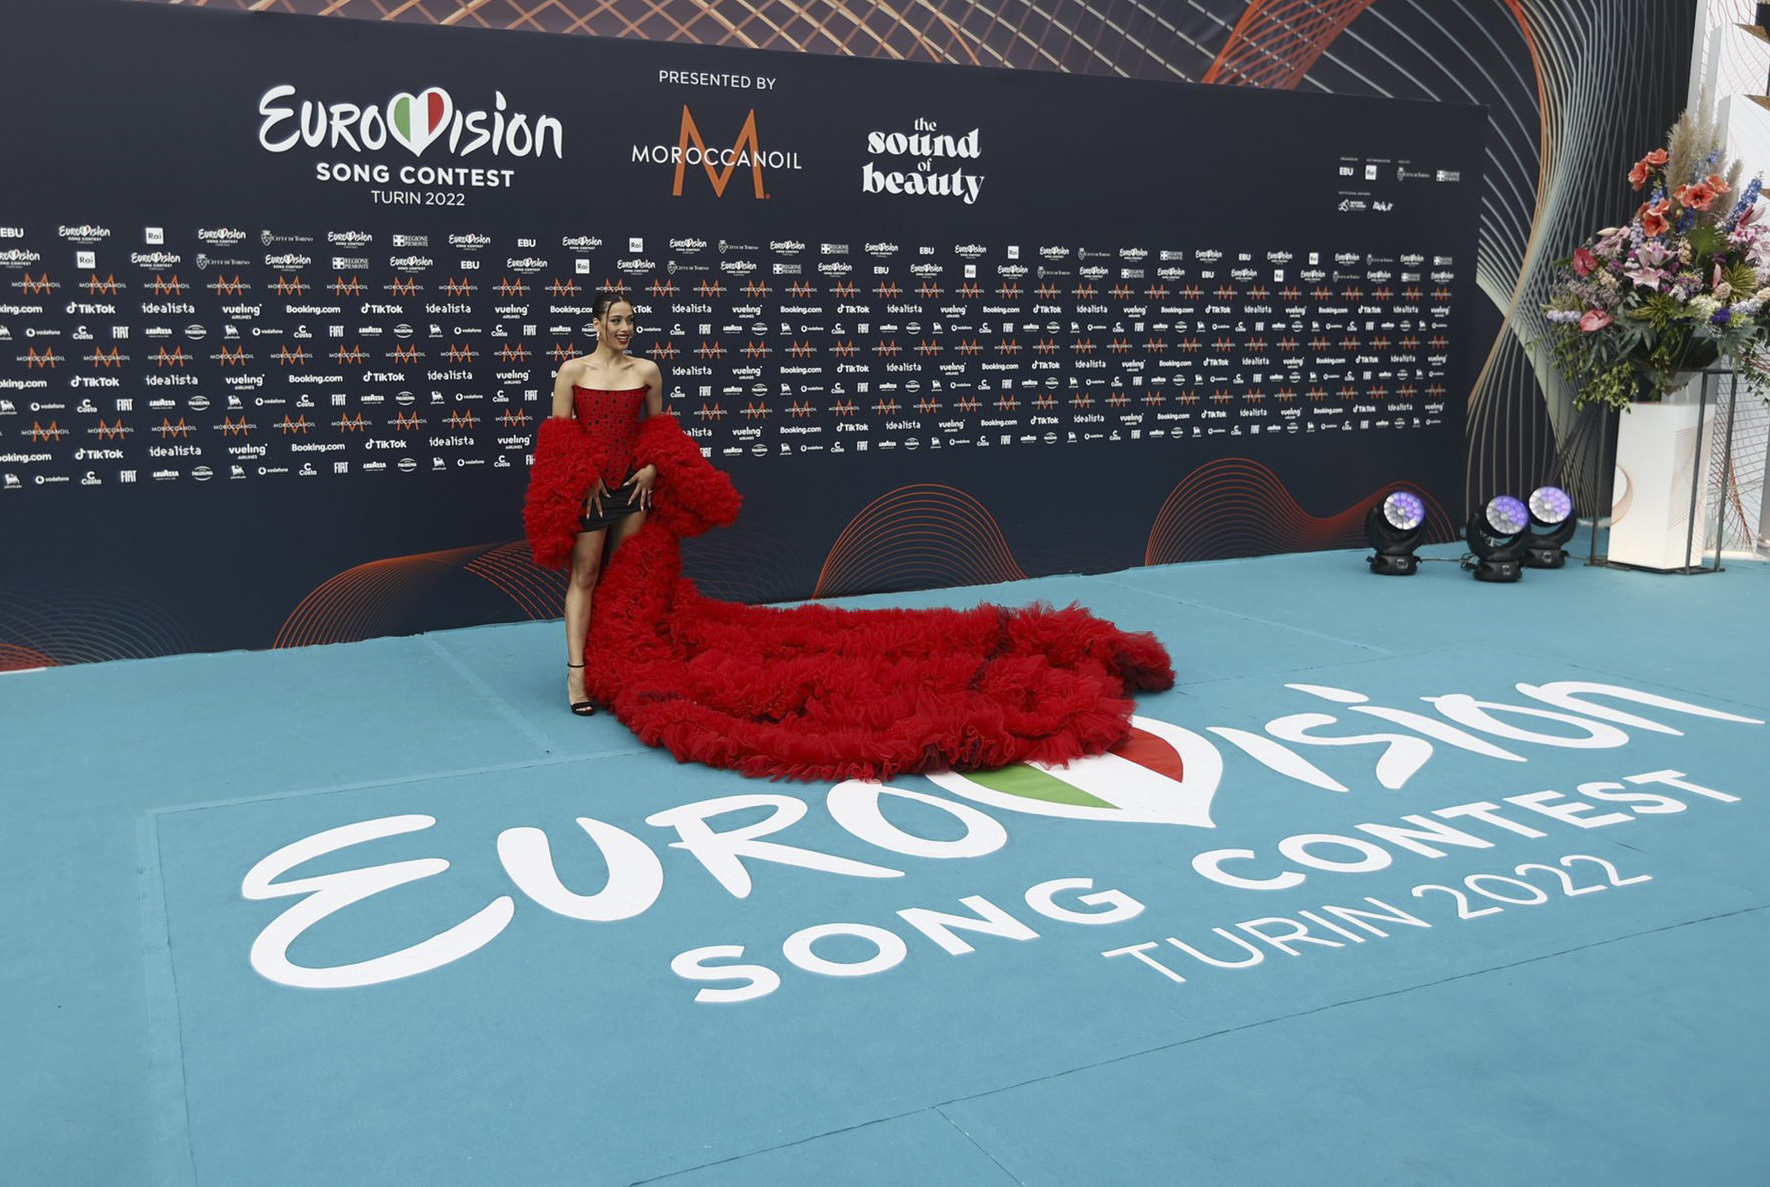 La representante española en Eurovisión 2022, Chanel, posando en la alfombra turquesa de Turín.